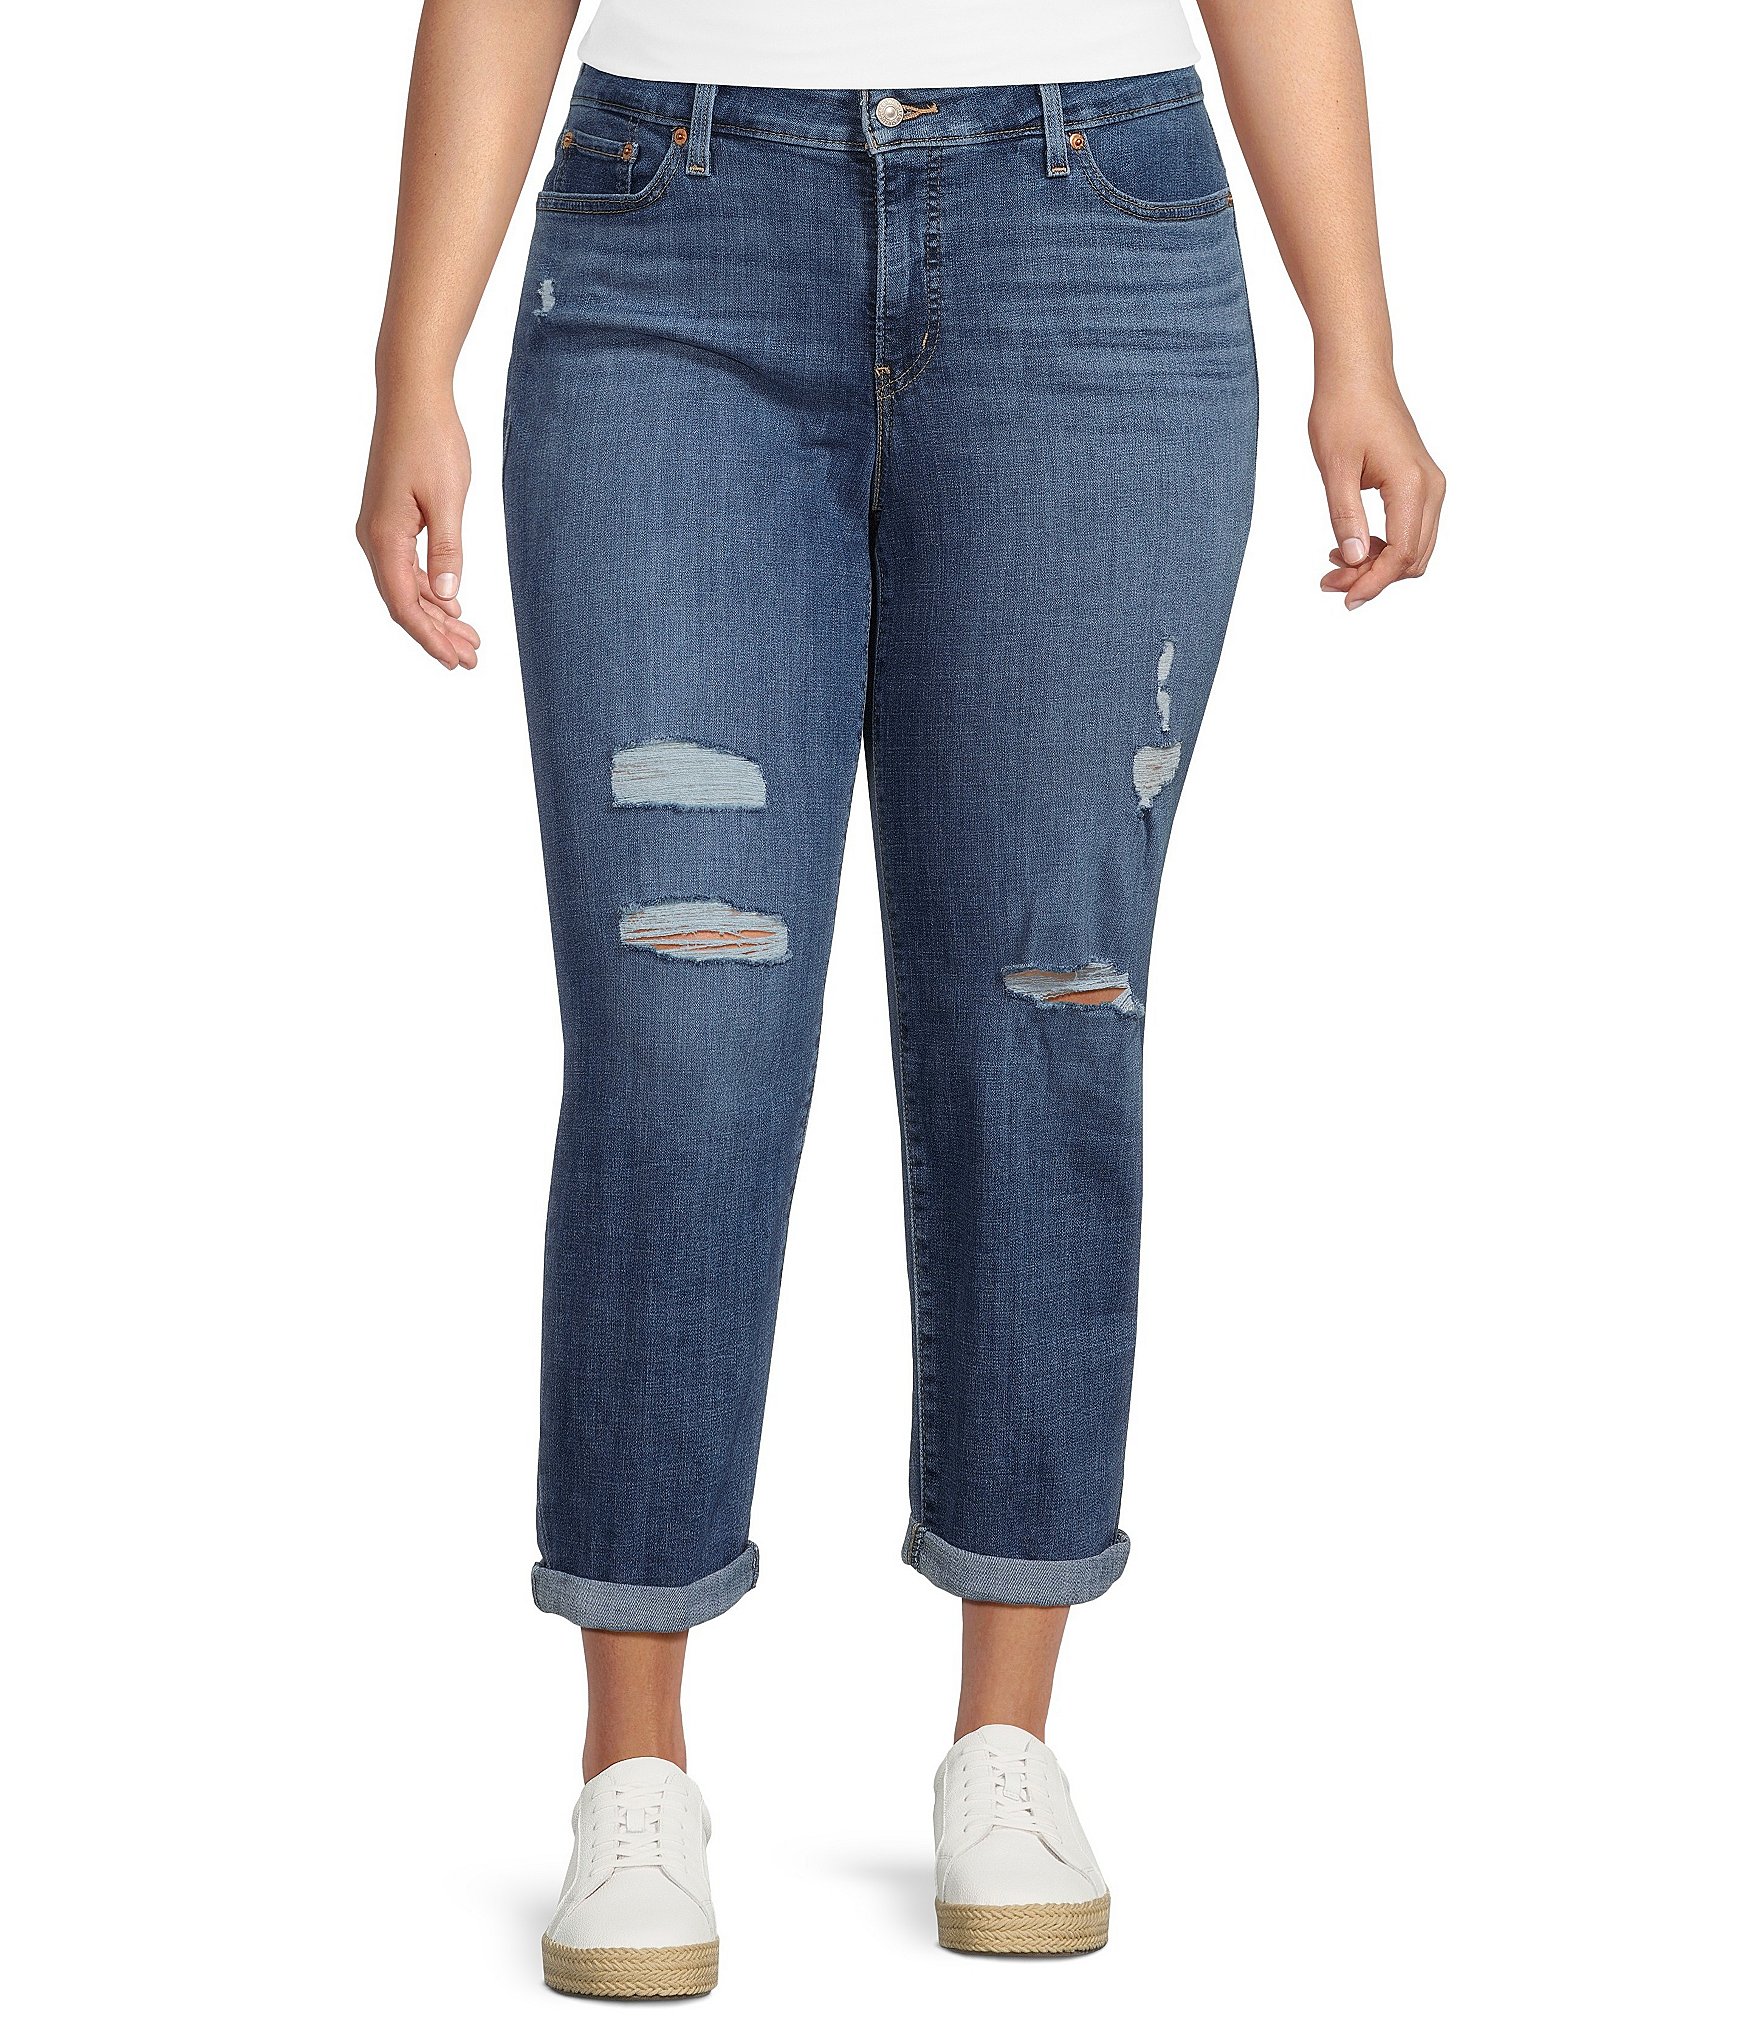 Pantalon Jean para mujer,Size 8Mis M, Marca LEVIS, Color Celeste.